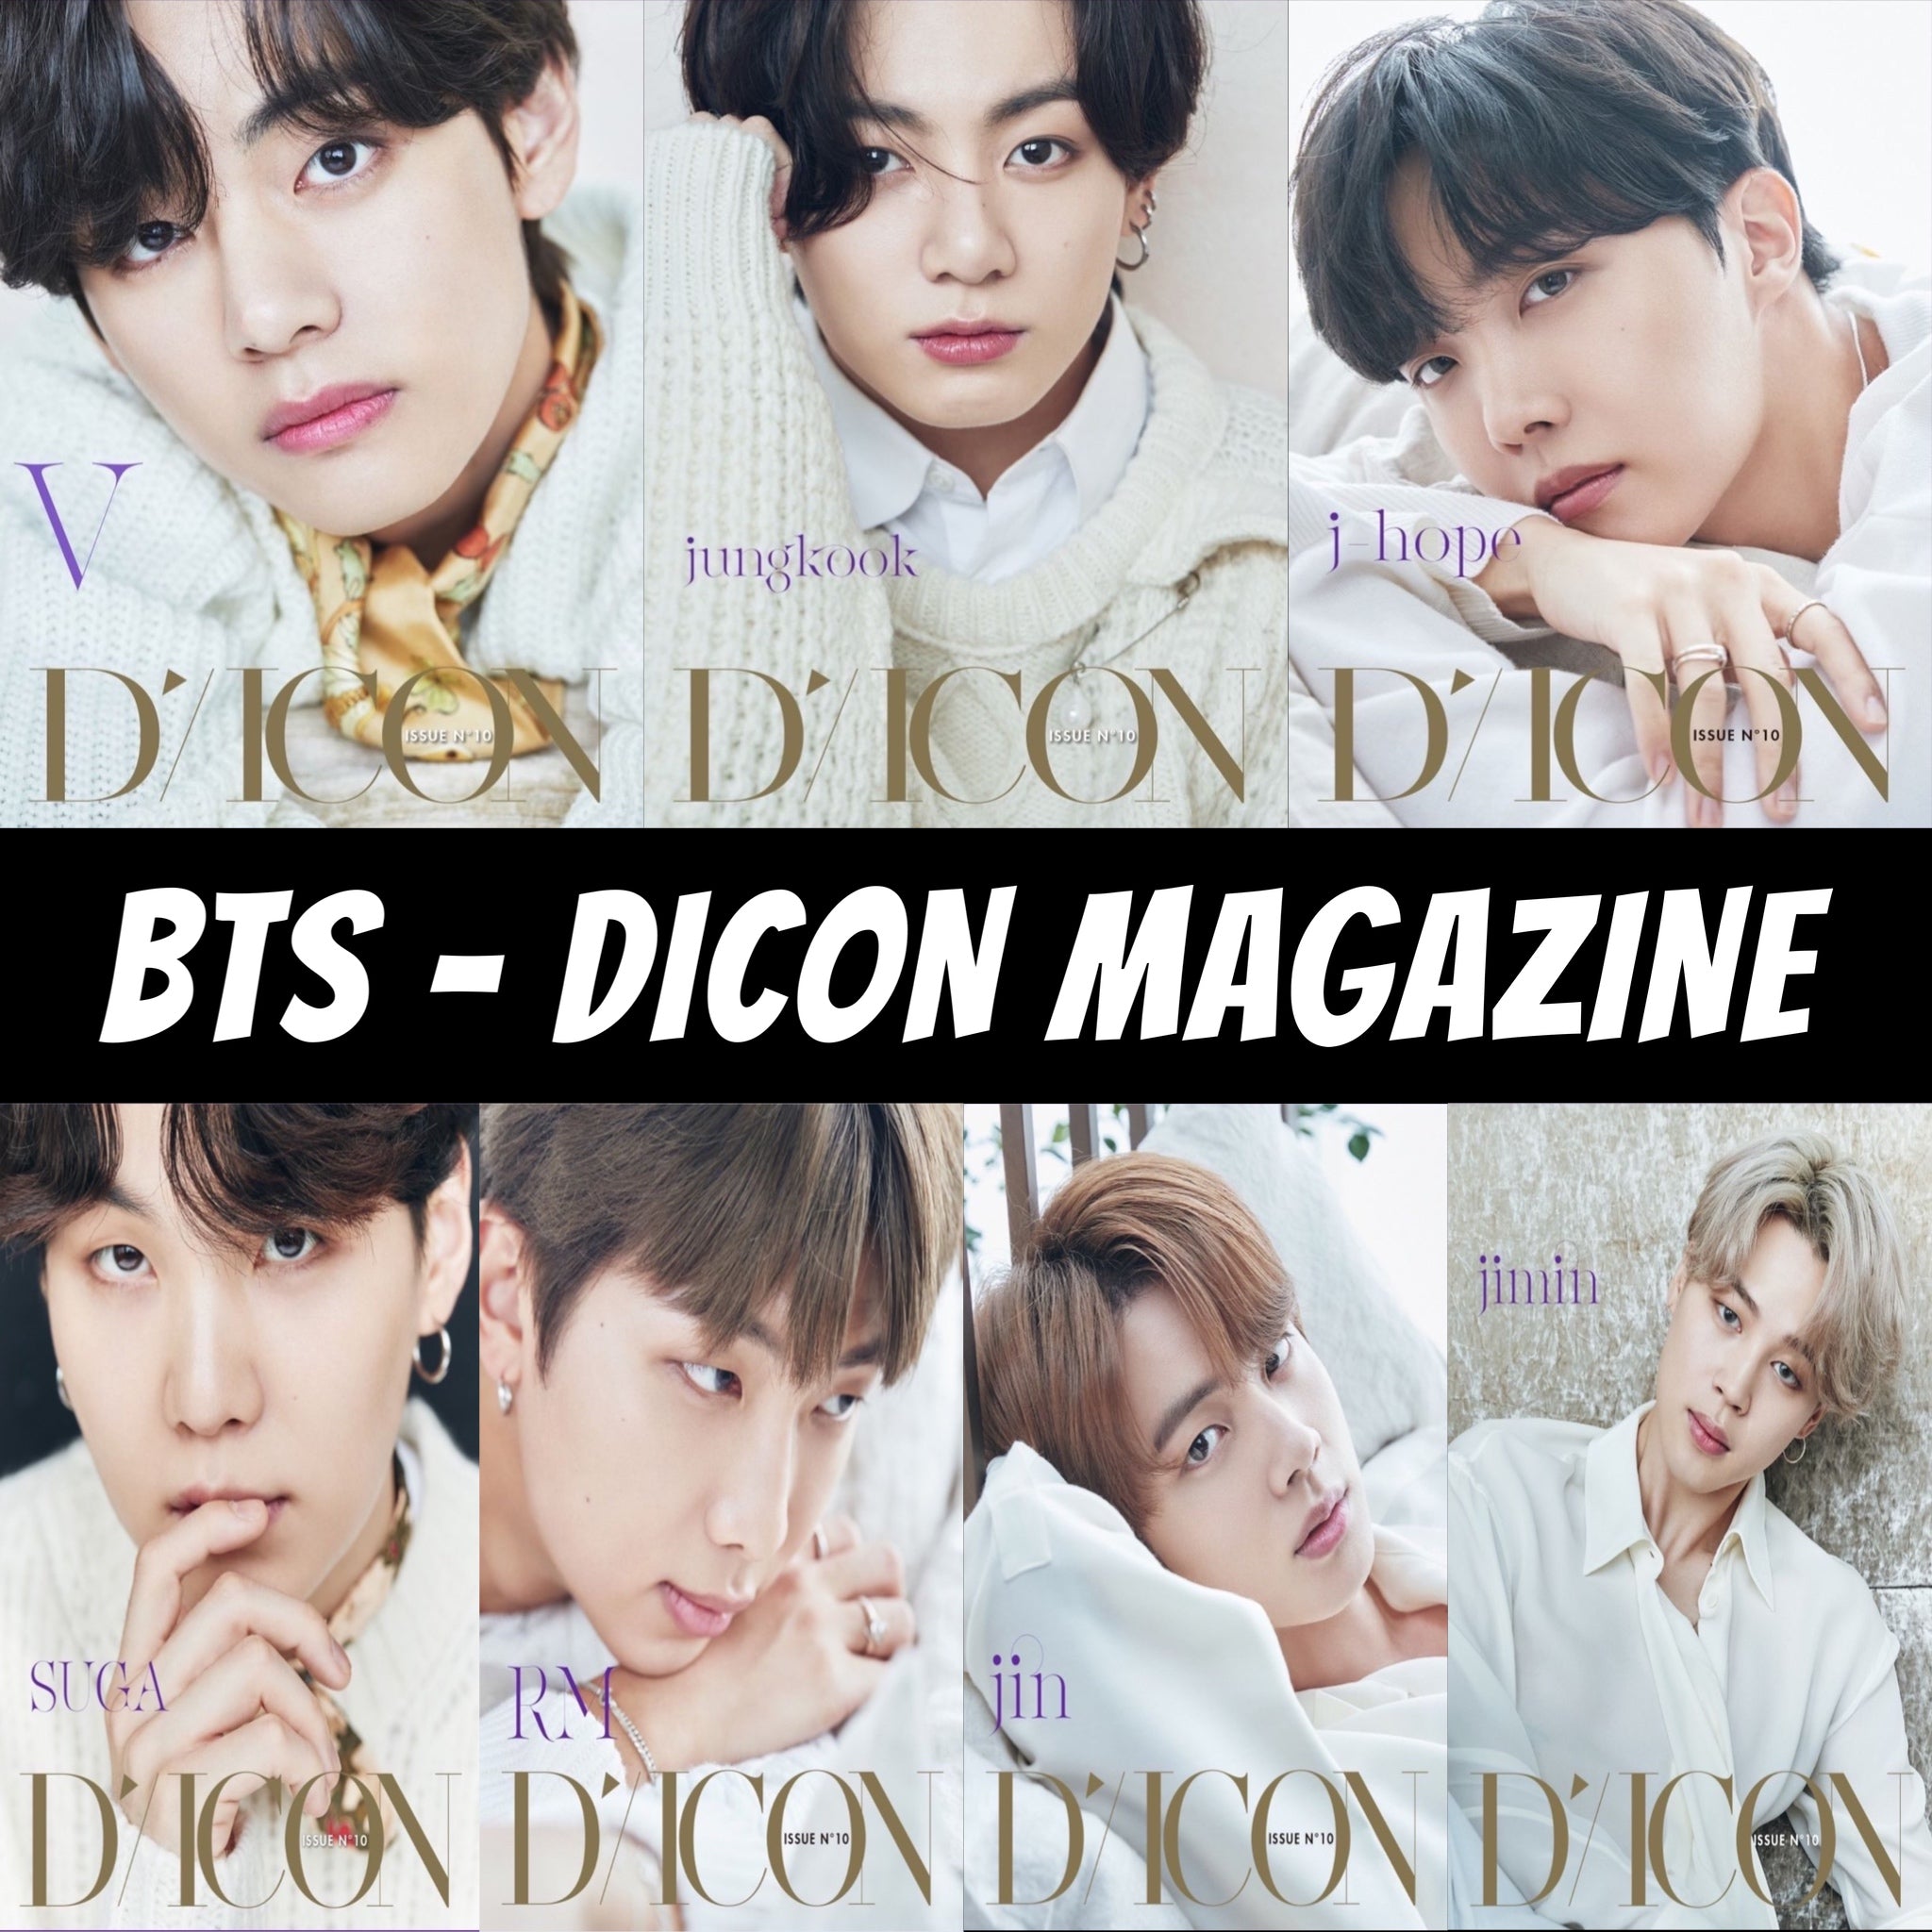 BTS ジョングク Dicon vol.10『BTS goes on!』 - K-POP/アジア